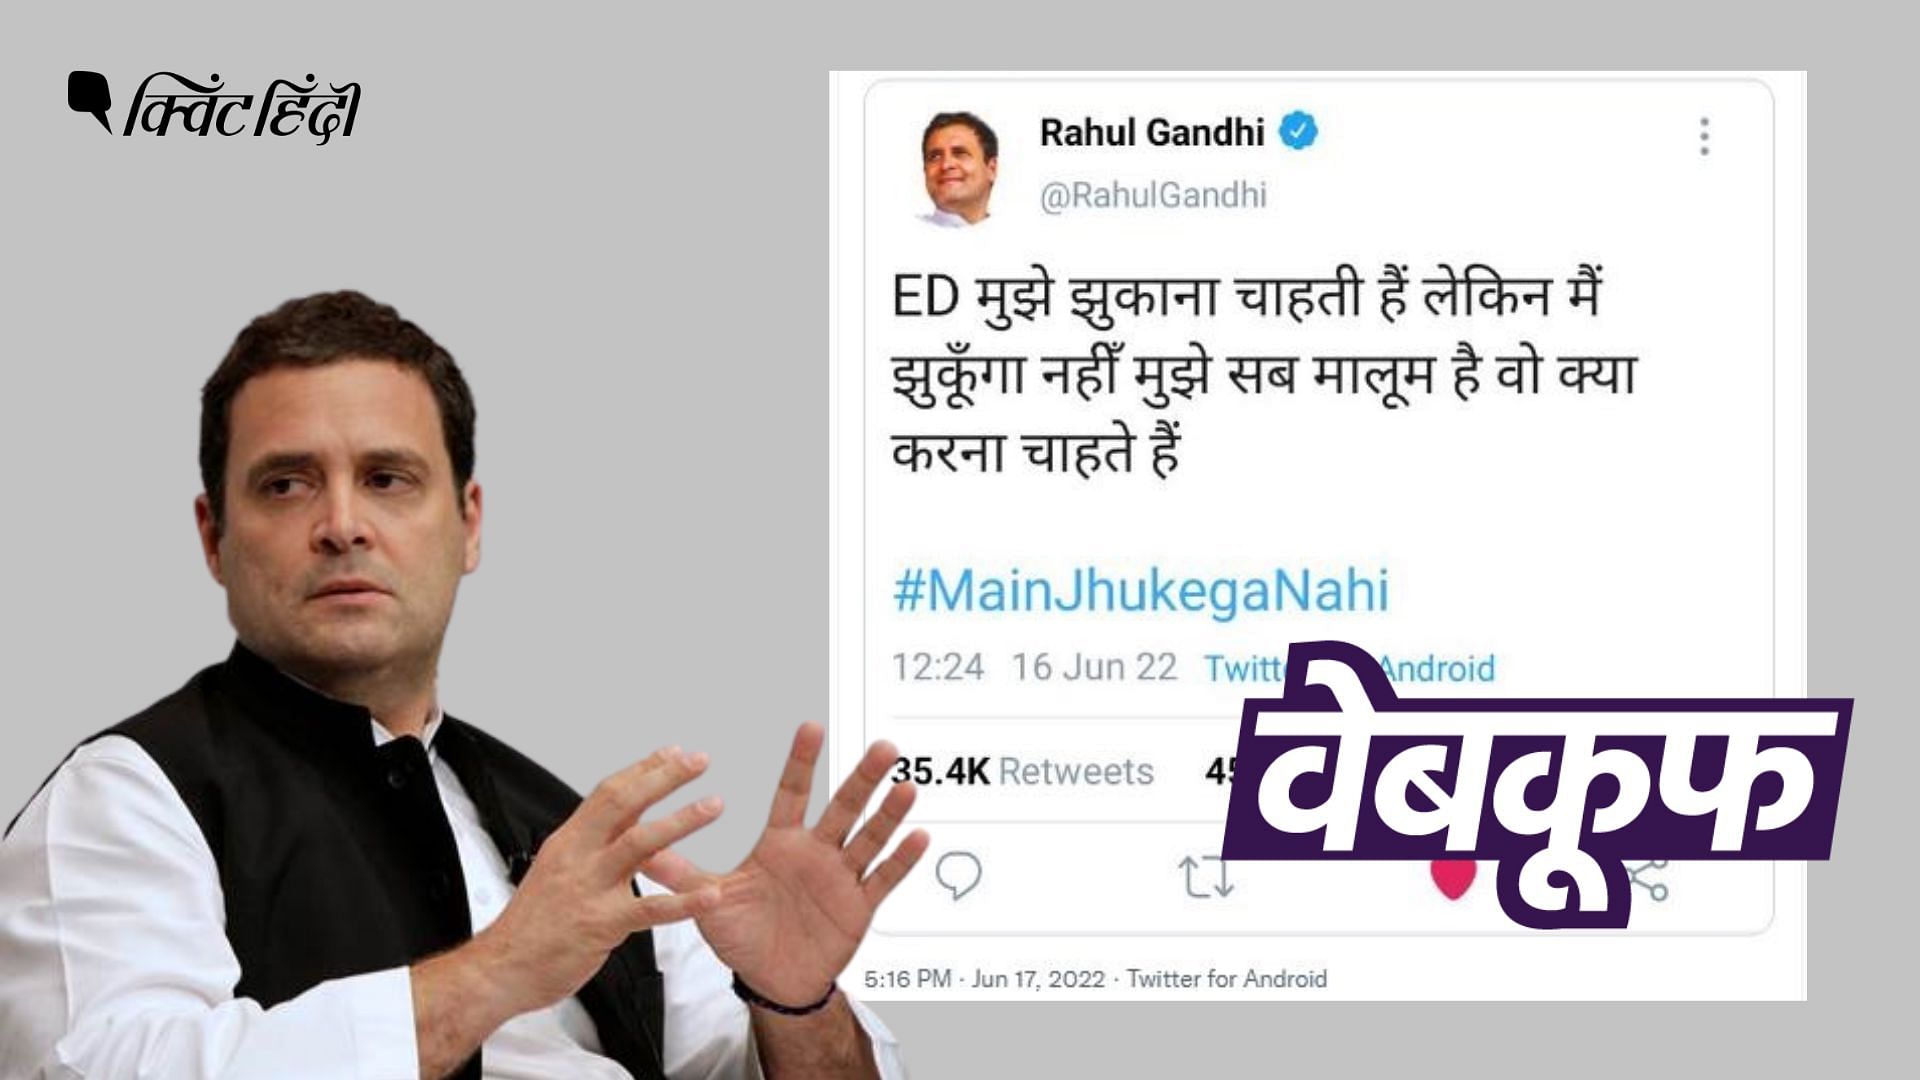 <div class="paragraphs"><p>Rahul Gandhi के नाम से वायरल इस फर्जी ट्वीट में वो ED को चुनौती देते नजर आ रहे हैं.</p></div>